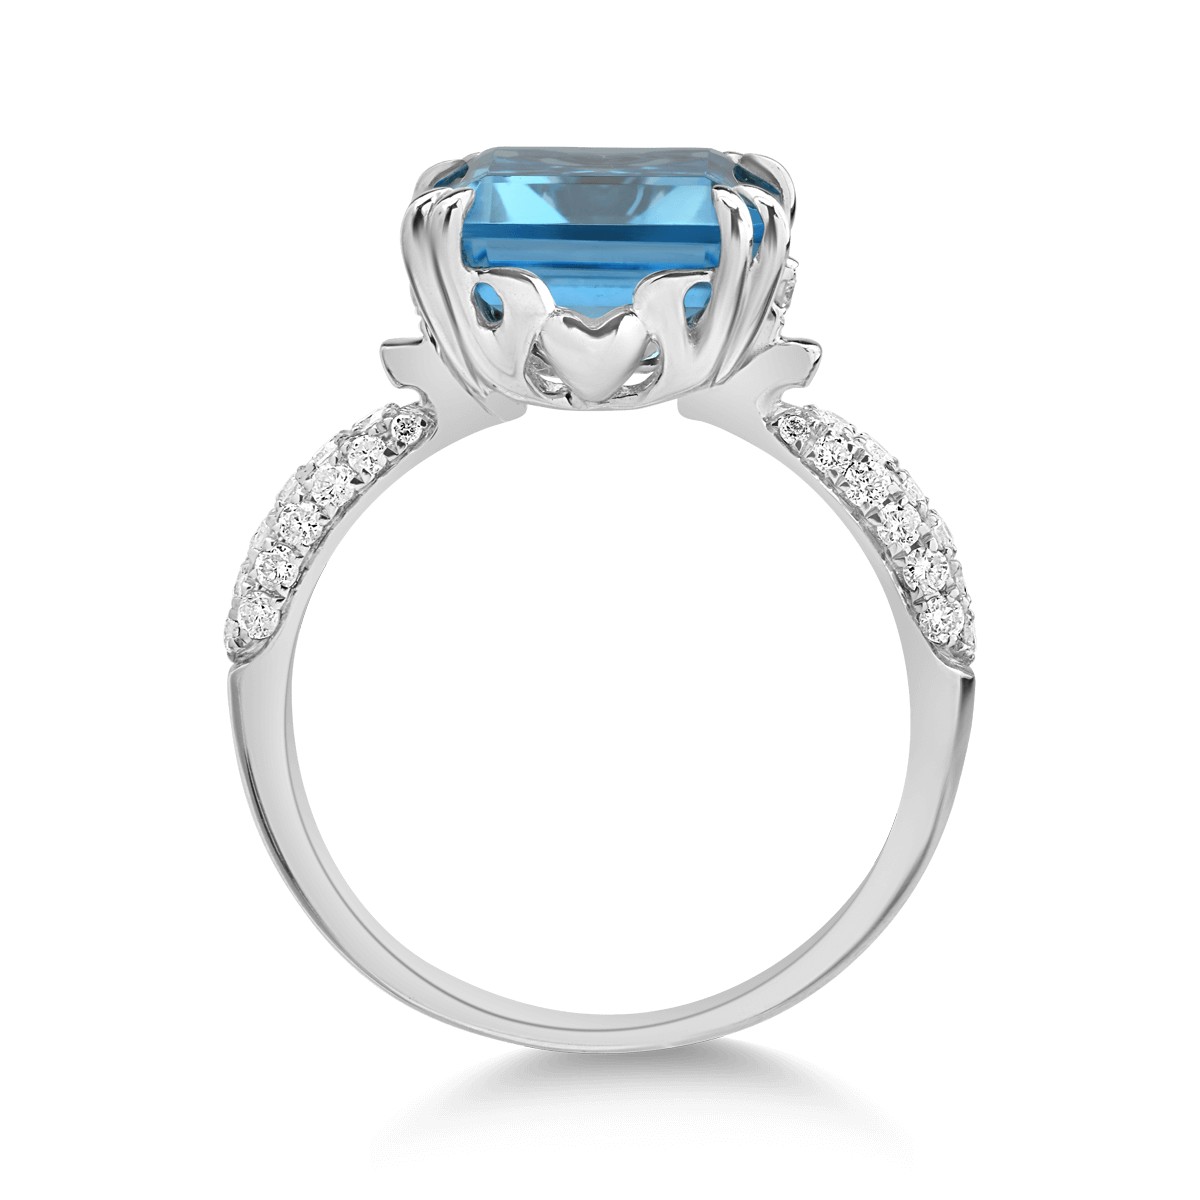 Inel din aur alb de 14K cu topaz albastru de 6.496ct si diamante de 0.326ct